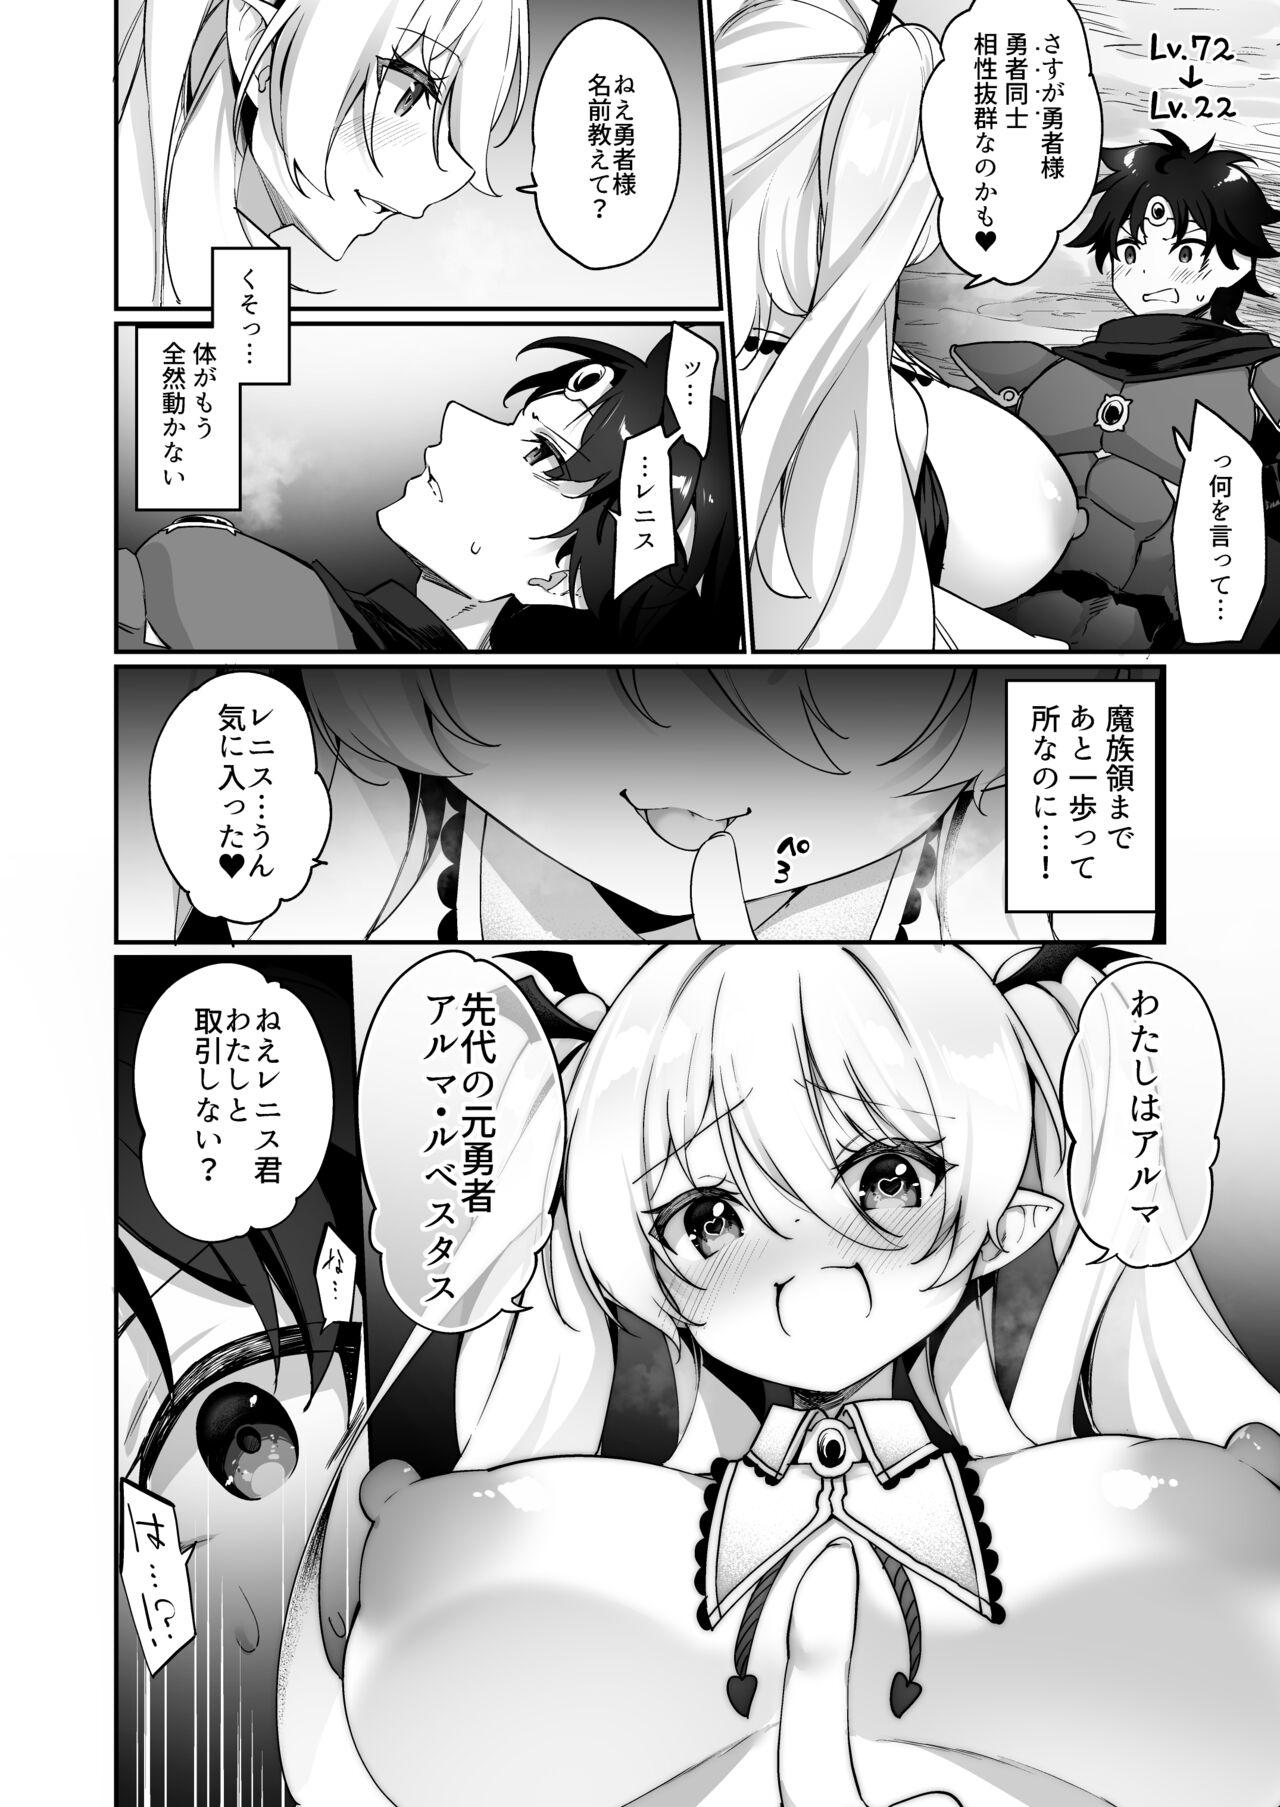 Pussyeating Maou ni idonda yusha ga sakyubasu ni ochite iku hanashi - Original Russian - Page 4